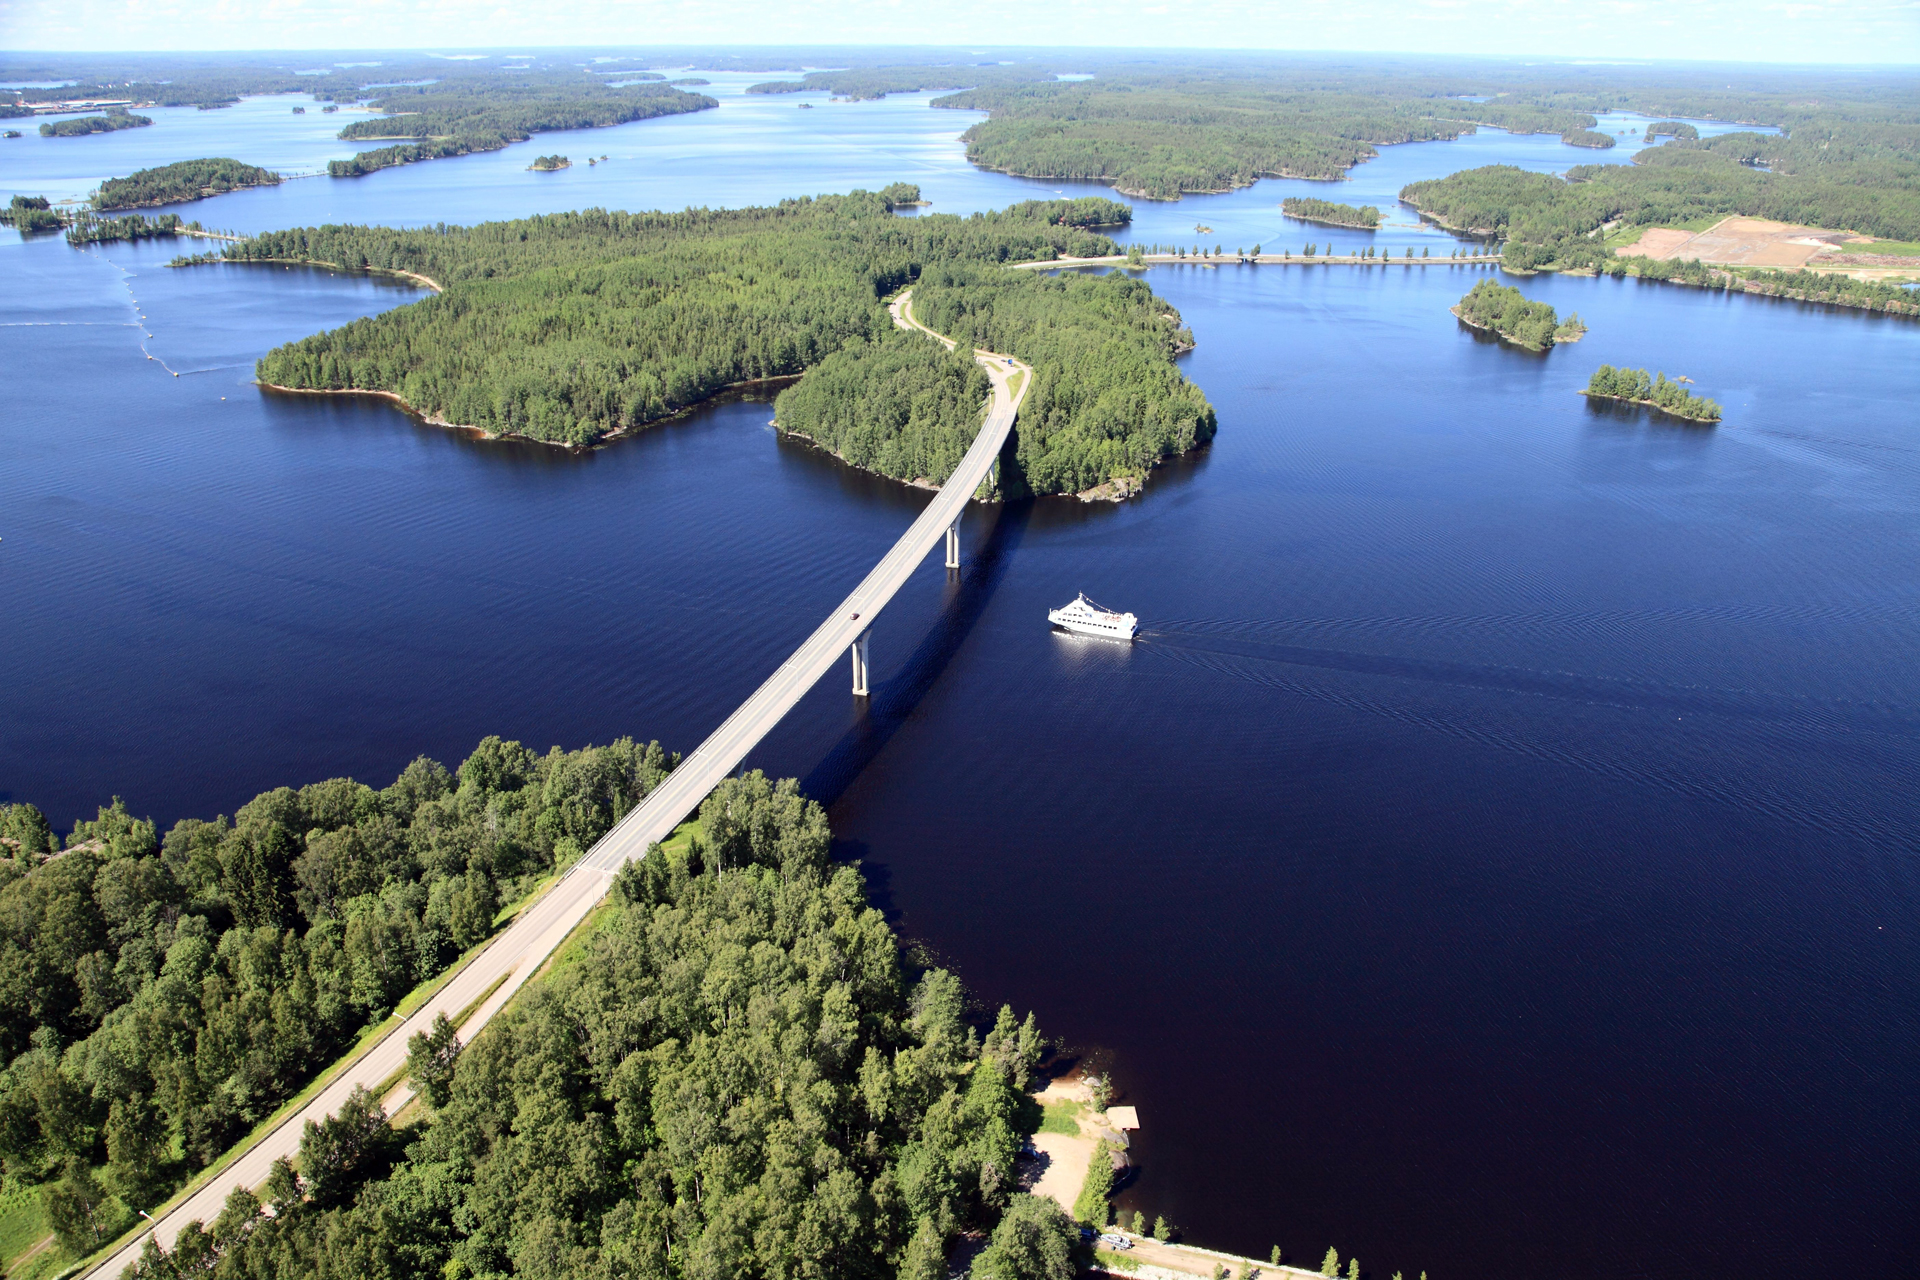 Der Saimaa-See bei Lappeenranta liegt unmittelbar an der russischen Grenze. Bild: GoSaimaa